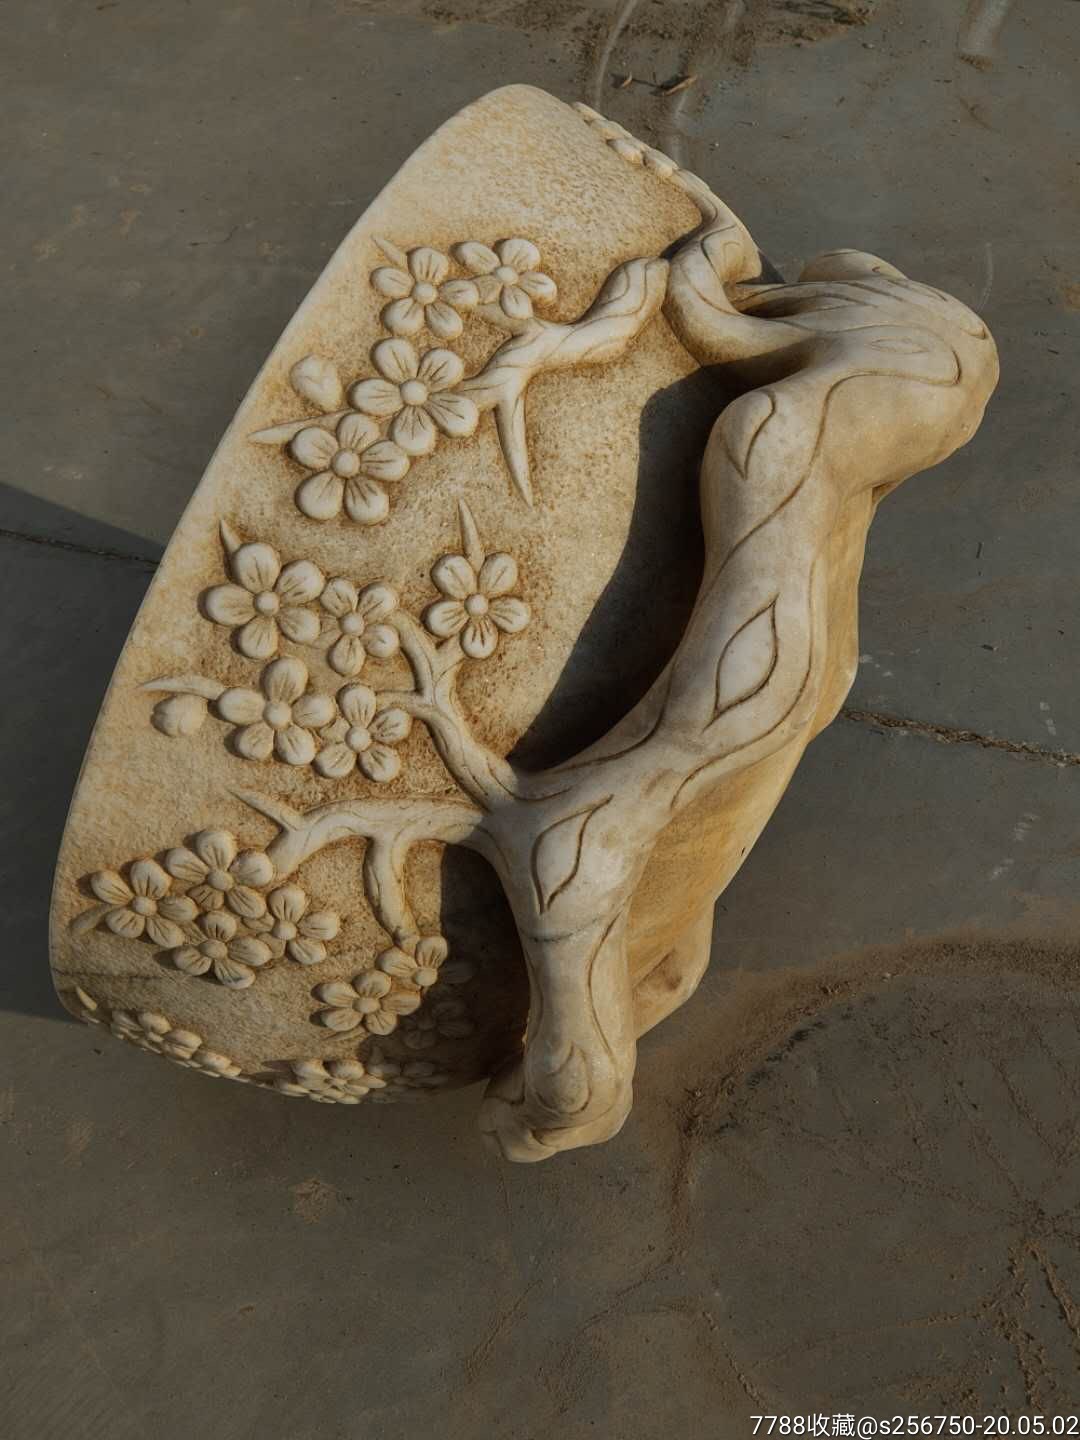 梅花石盆 材质~汉白玉 高浮雕镂空雕刻,雕工精美漂亮